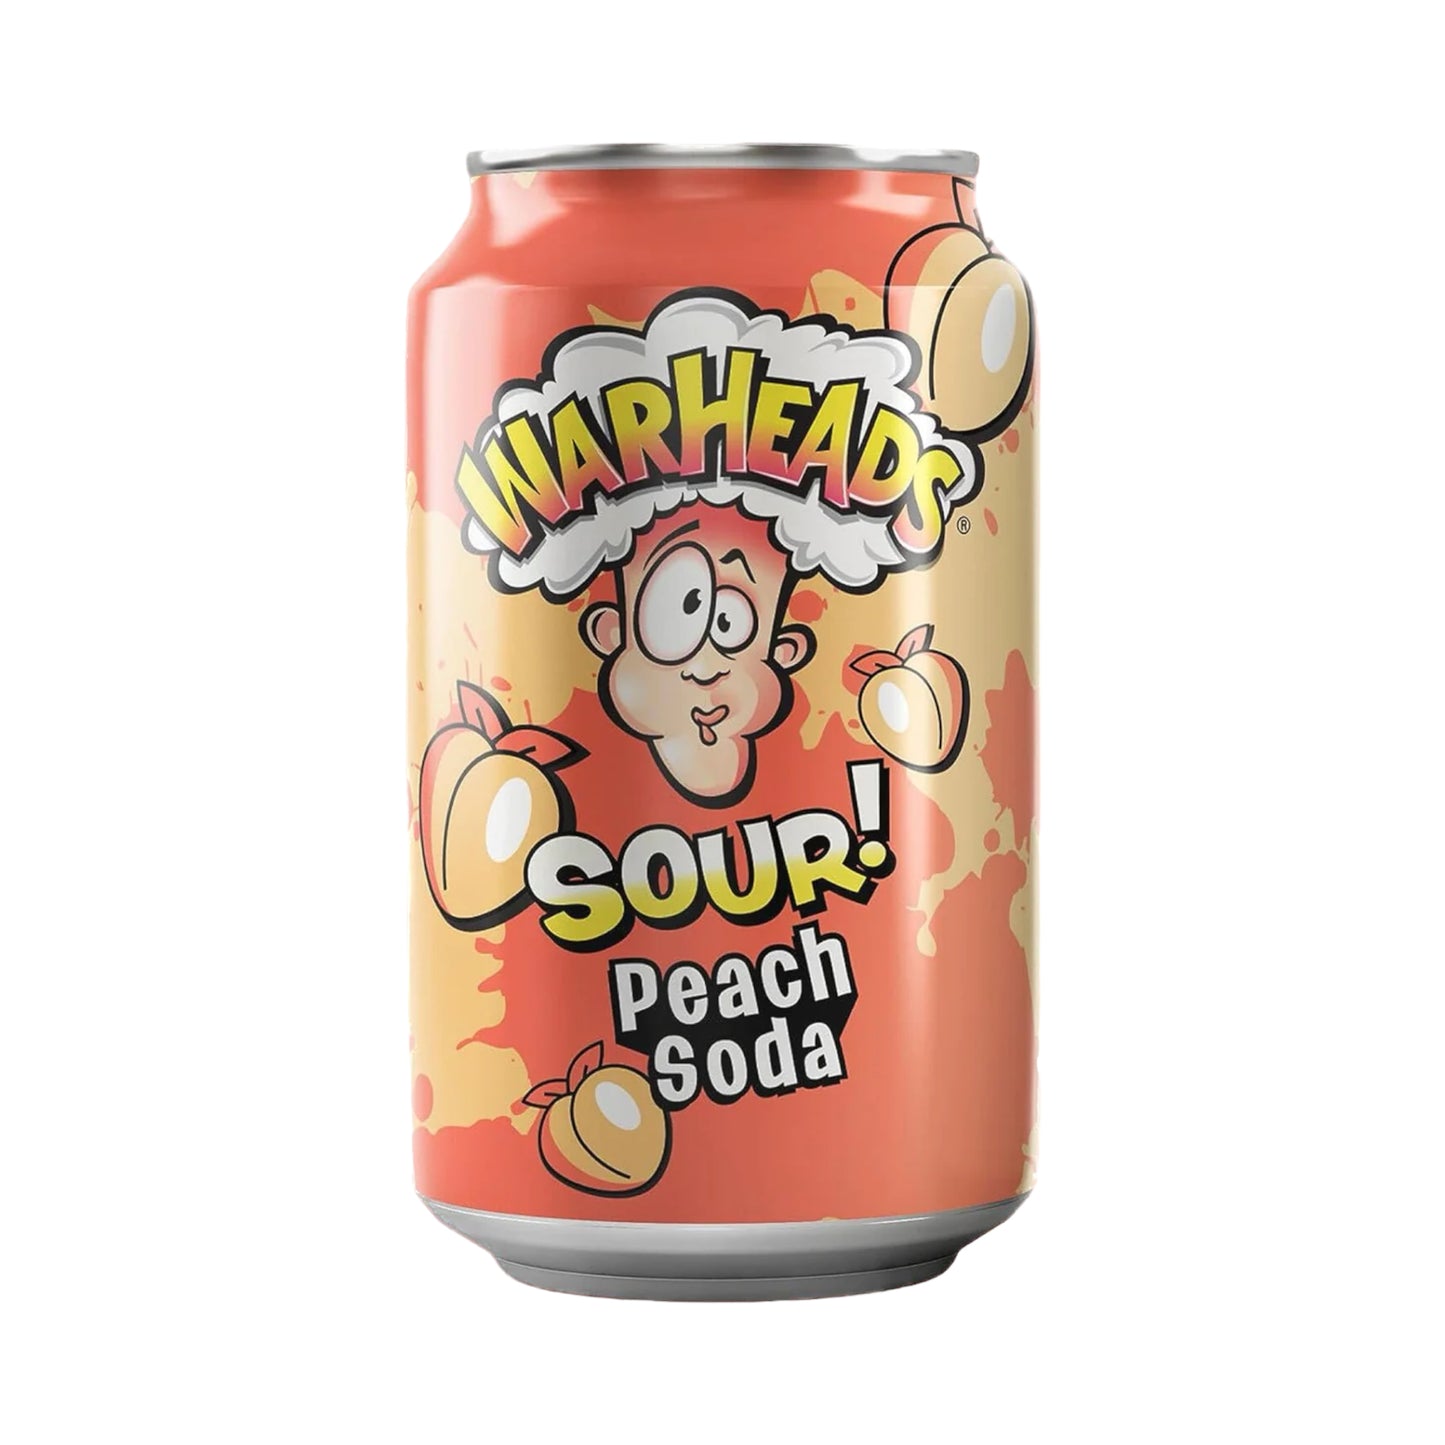 Warheads SOUR! Peach Soda - 12oz (355ml)